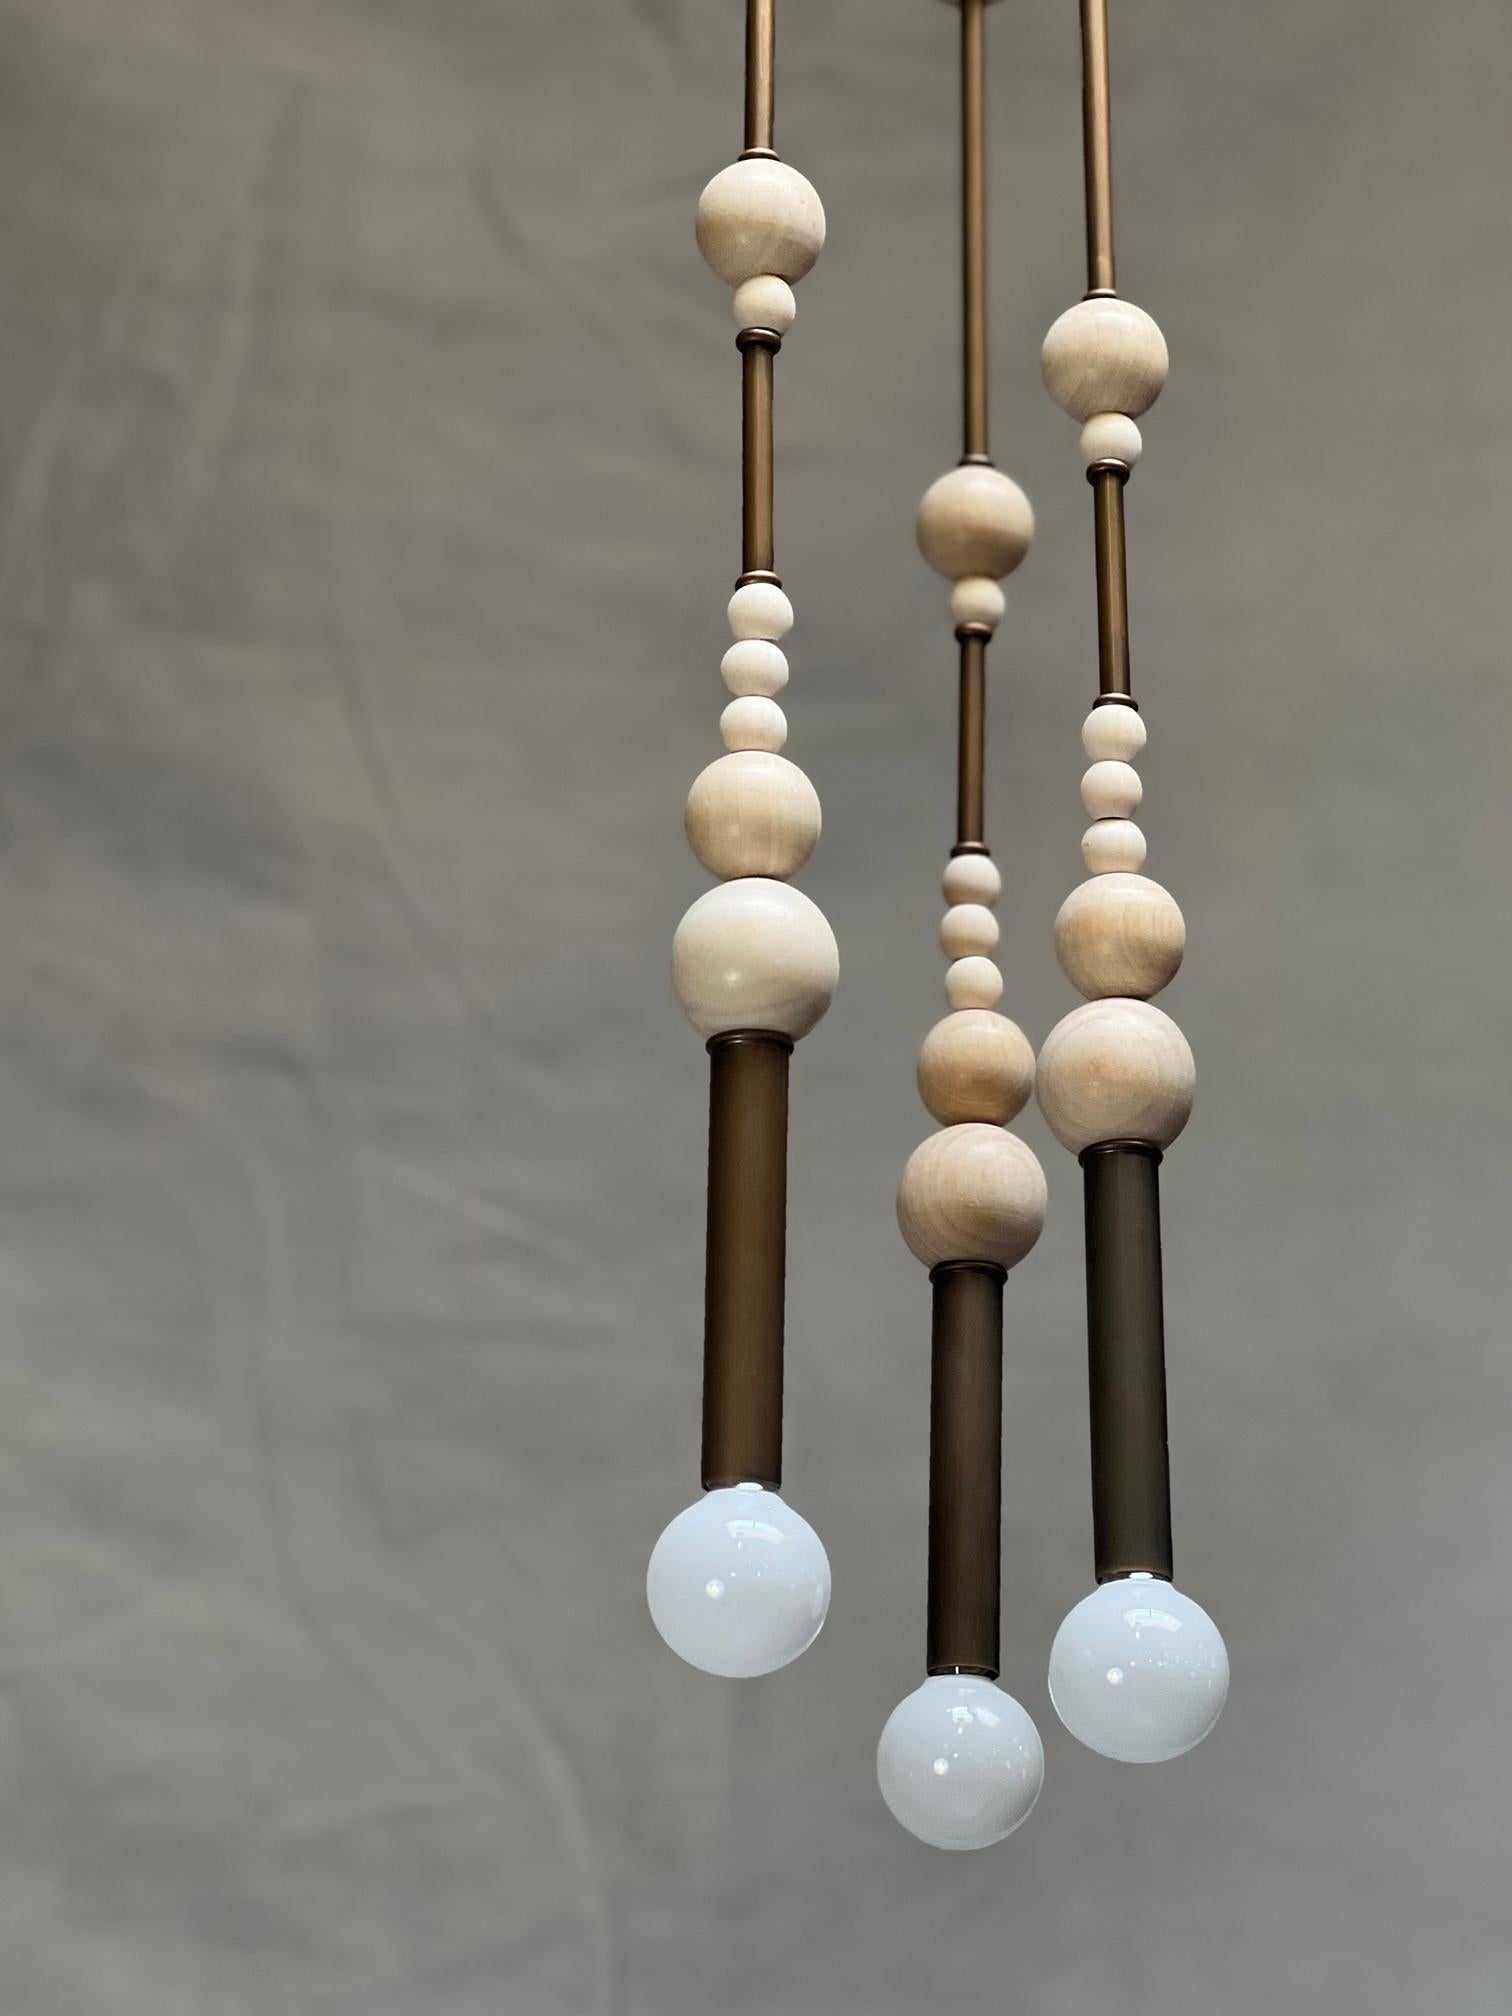 Ensemble très unique de trois pendentifs de quatre pieds. Artistics est composé de perles de bois de différentes tailles empilées entre des tubes de laiton de 3/4